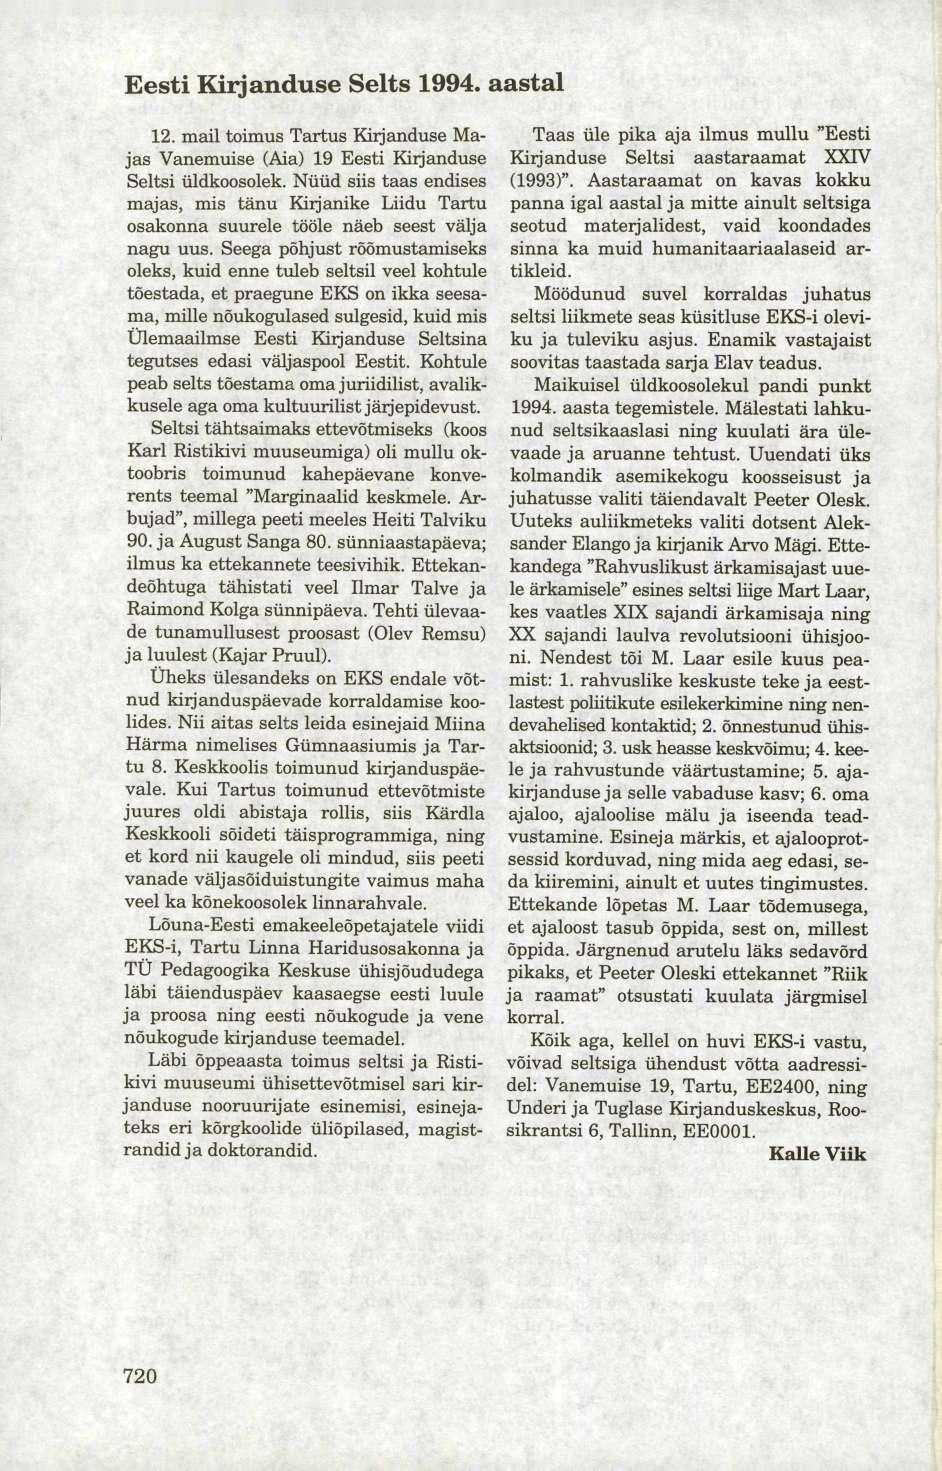 Eesti Kirjanduse Selts 1994. aastal 12. mail toimus Tartus Kirjanduse Majas Vanemuise (Aia) 19 Eesti Kirjanduse Seltsi üldkoosolek.